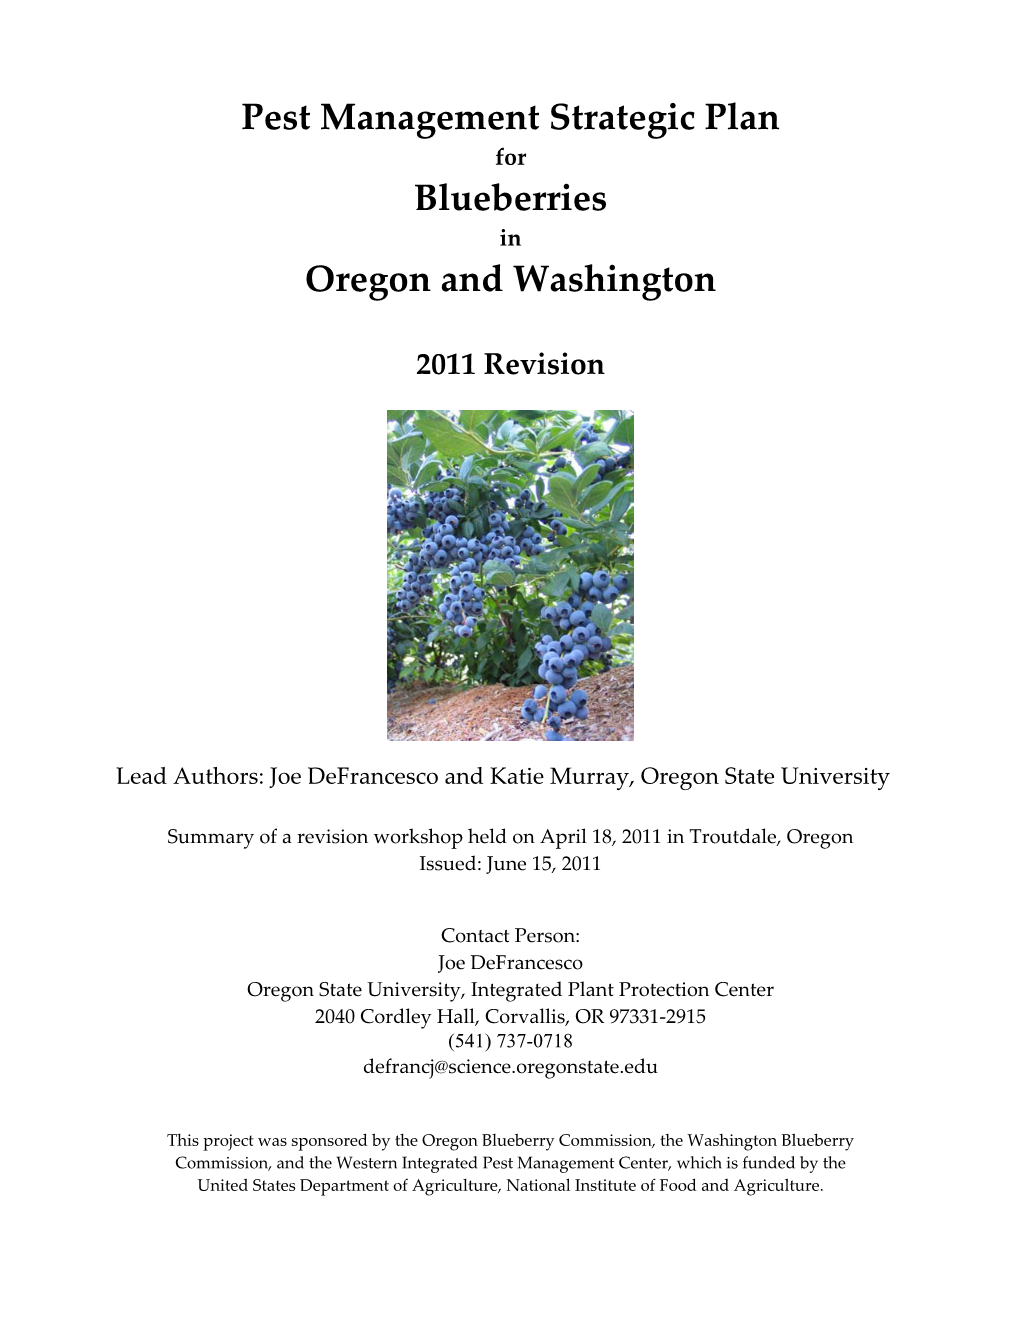 Pest Management Strategic Plan Blueberries Oregon and Washington